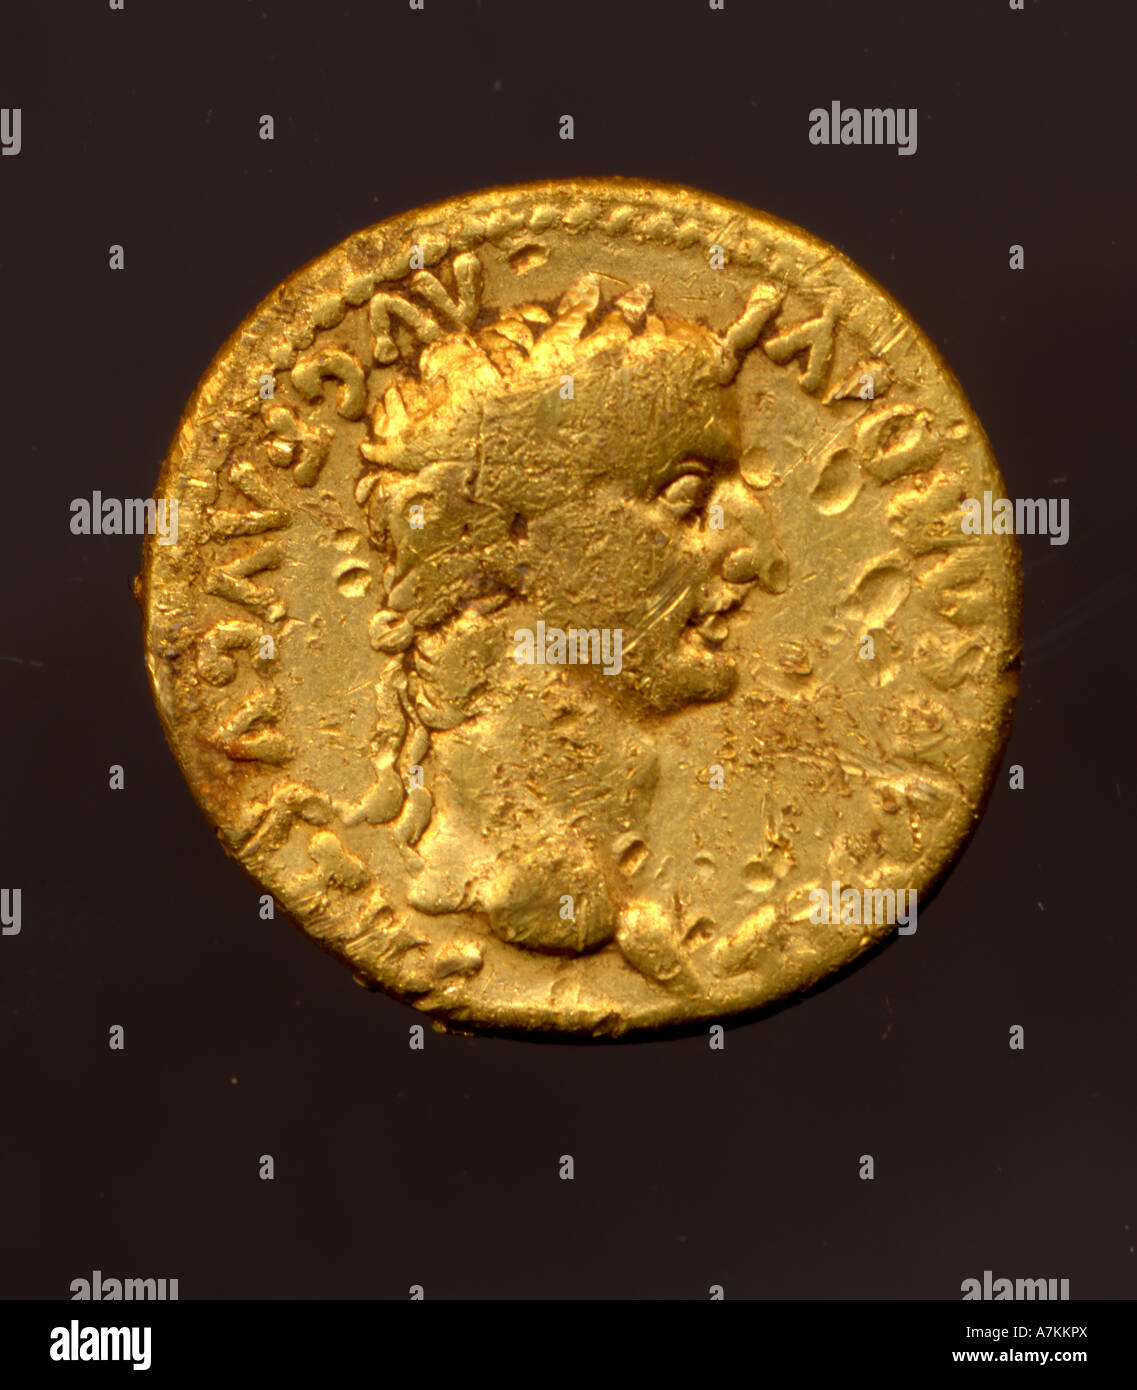 Gold römische münze -Fotos und -Bildmaterial in hoher Auflösung – Alamy